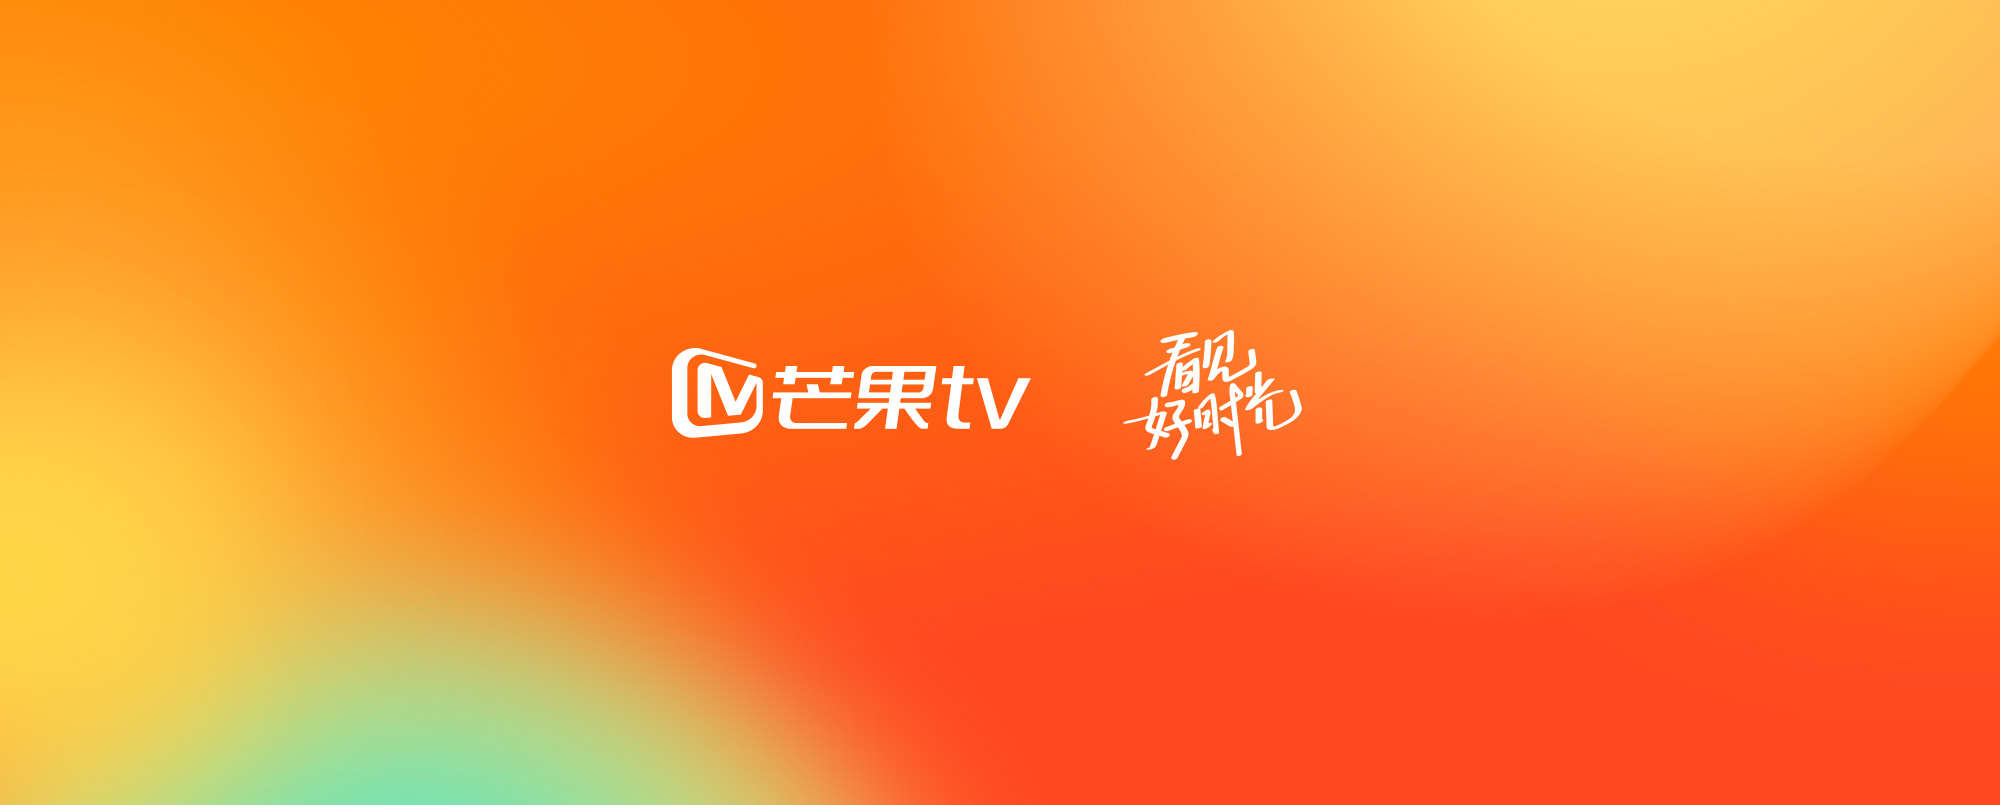 芒果TV（MGTV.COM）LOGO设计 - 王小困设计